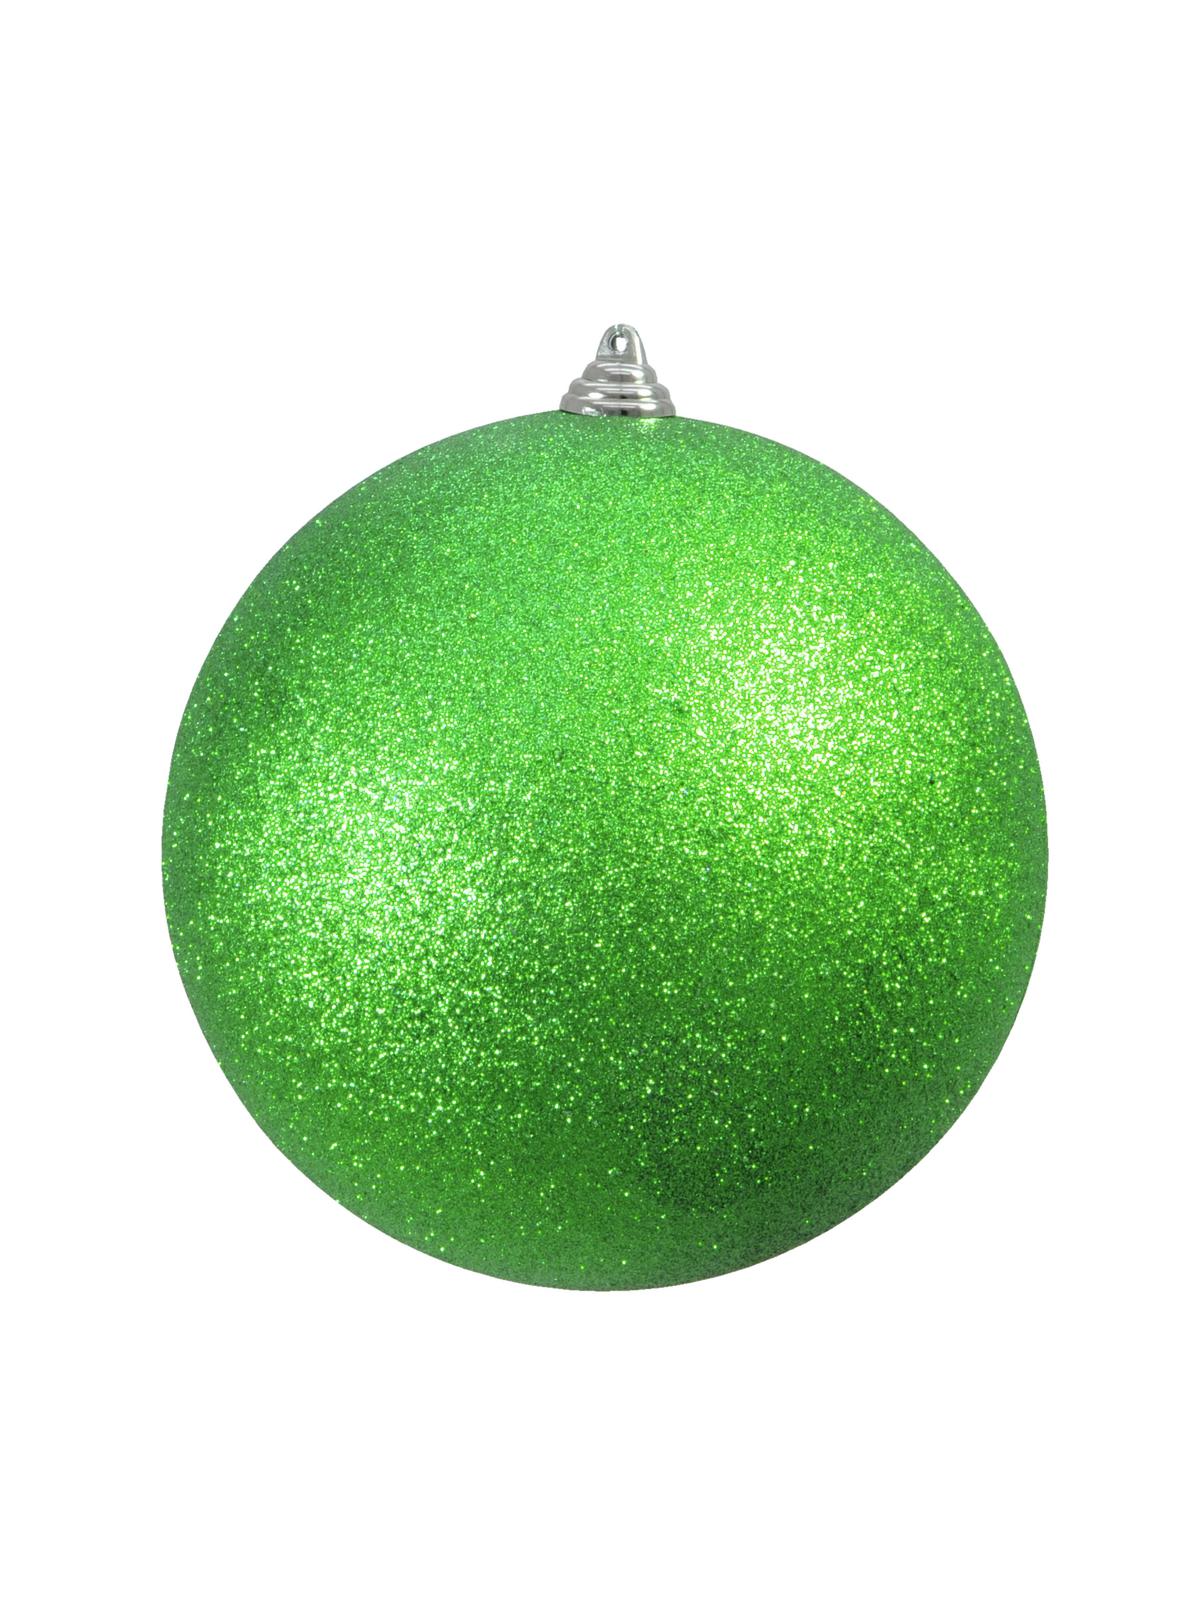 Vánoční ozdoba 20cm, zelená koule s glitry